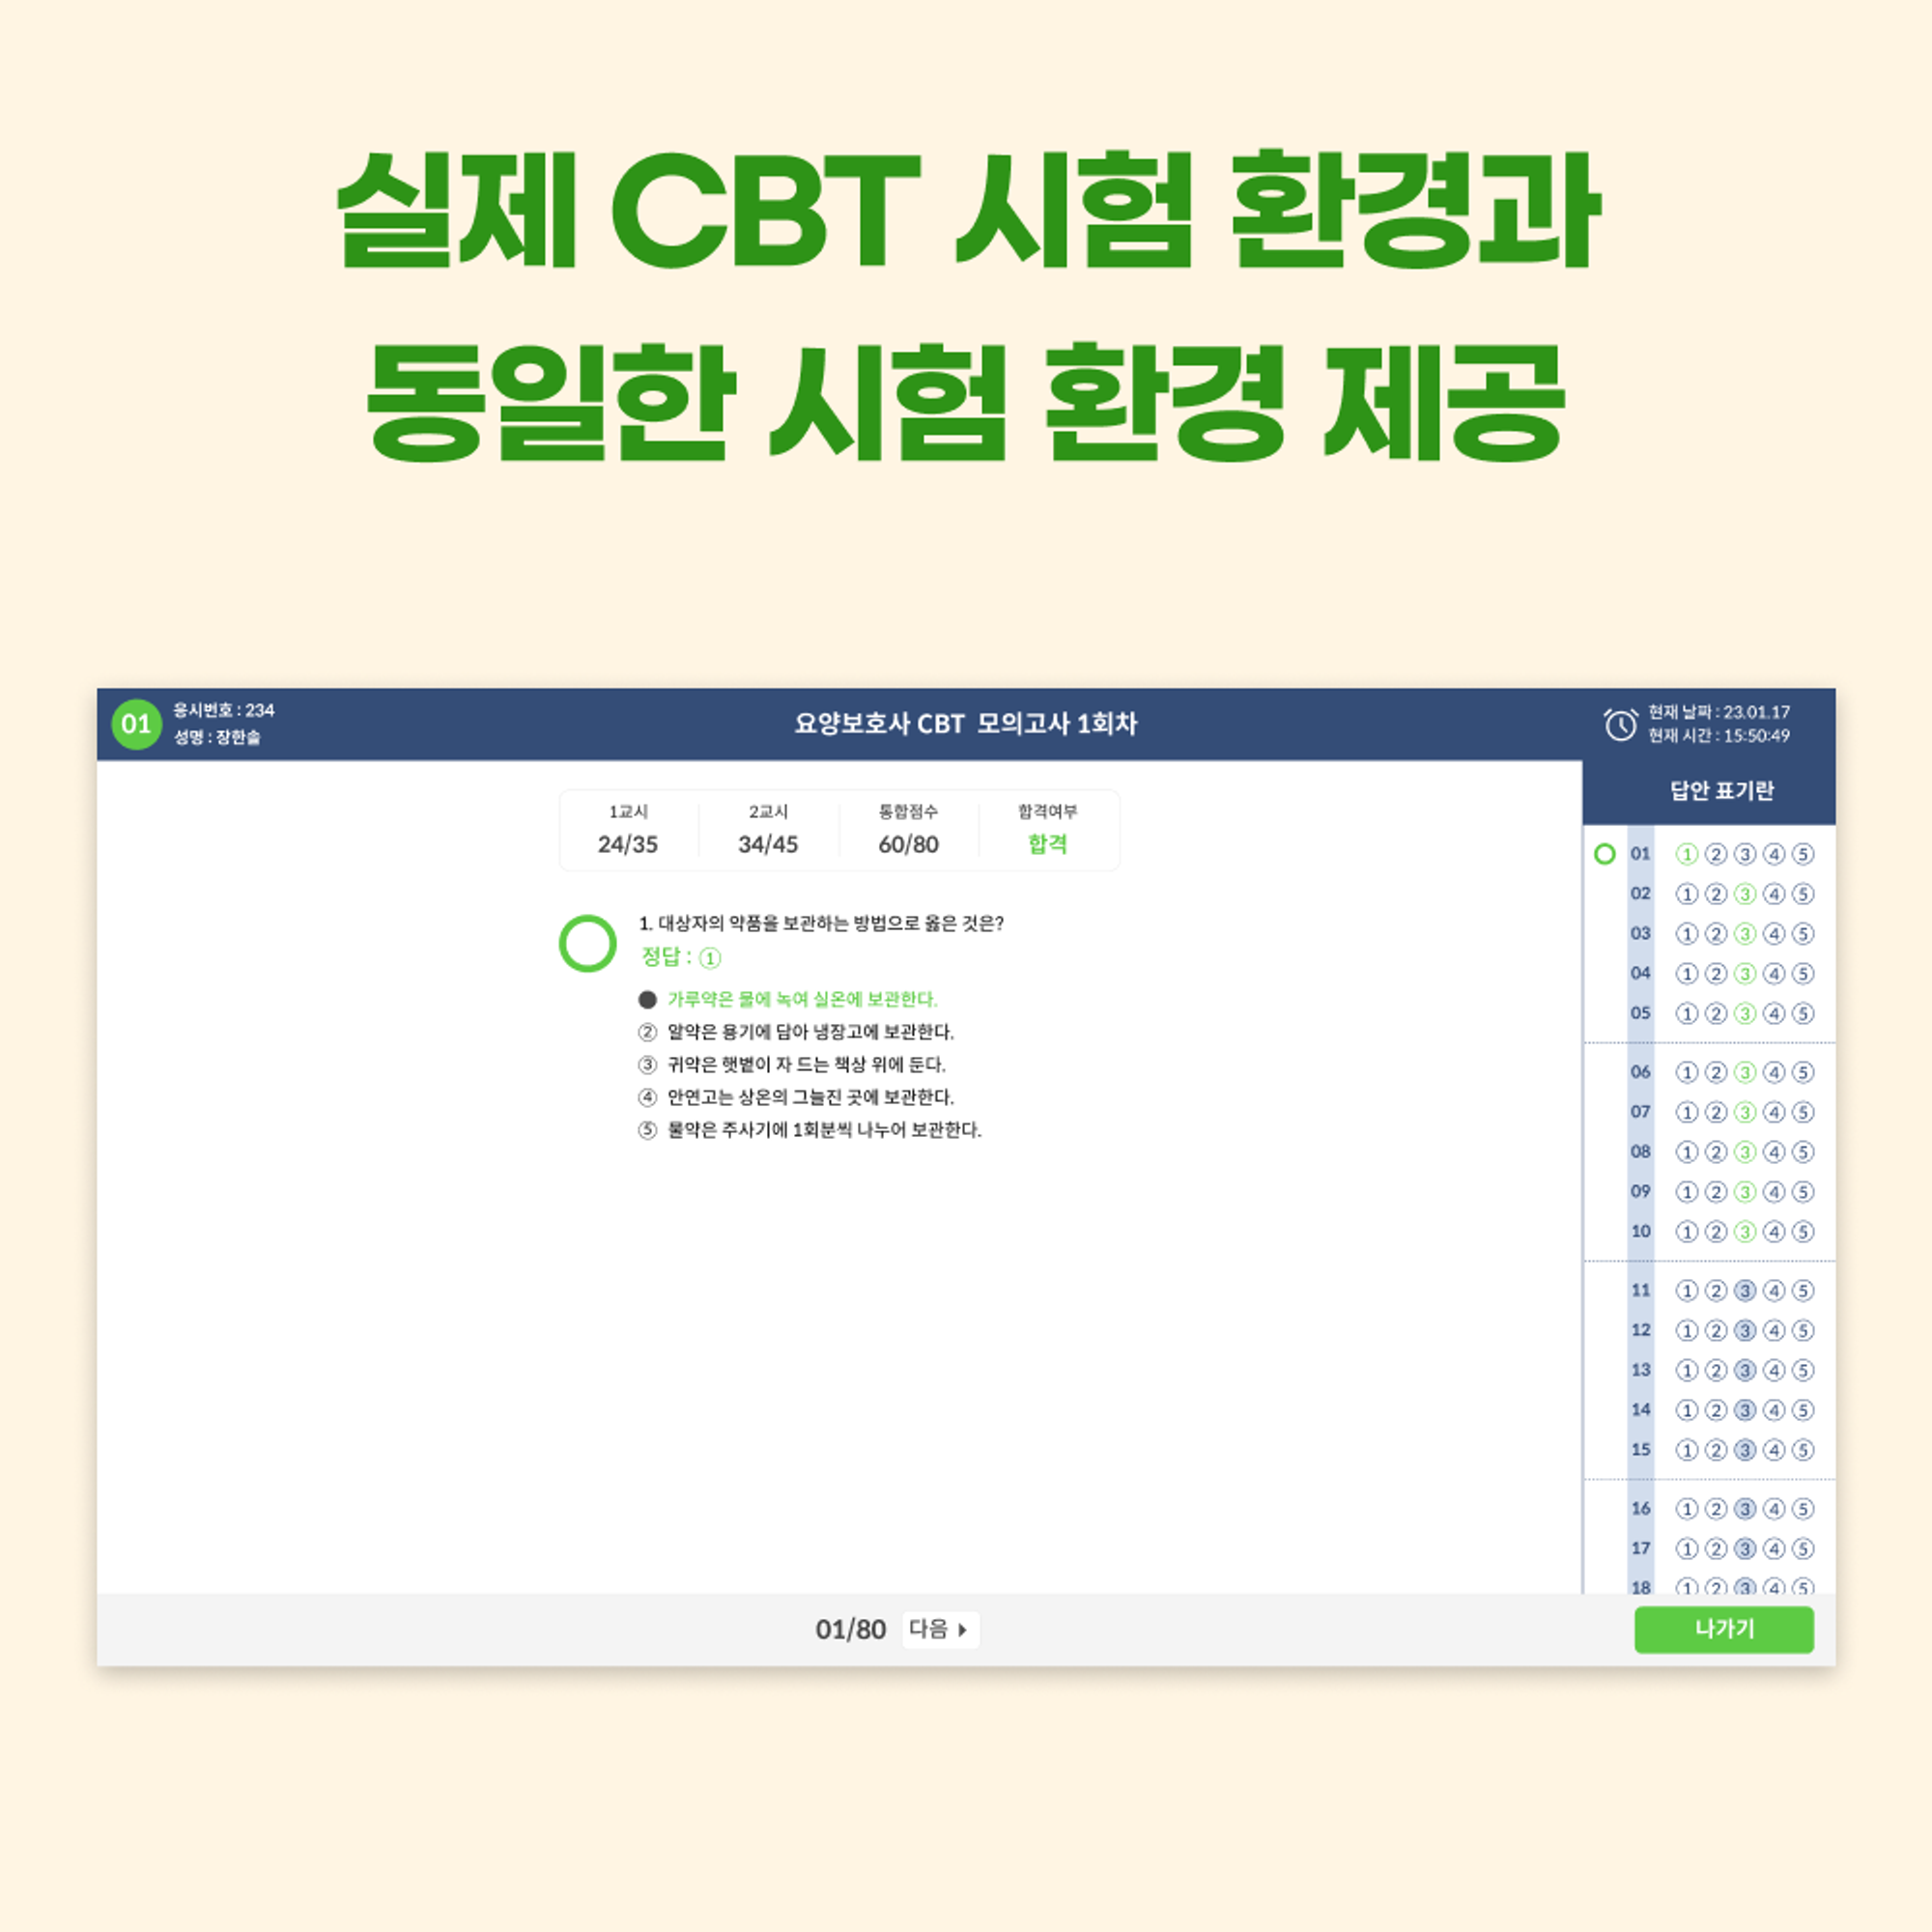 <케어파트너 CBT 소개 3>